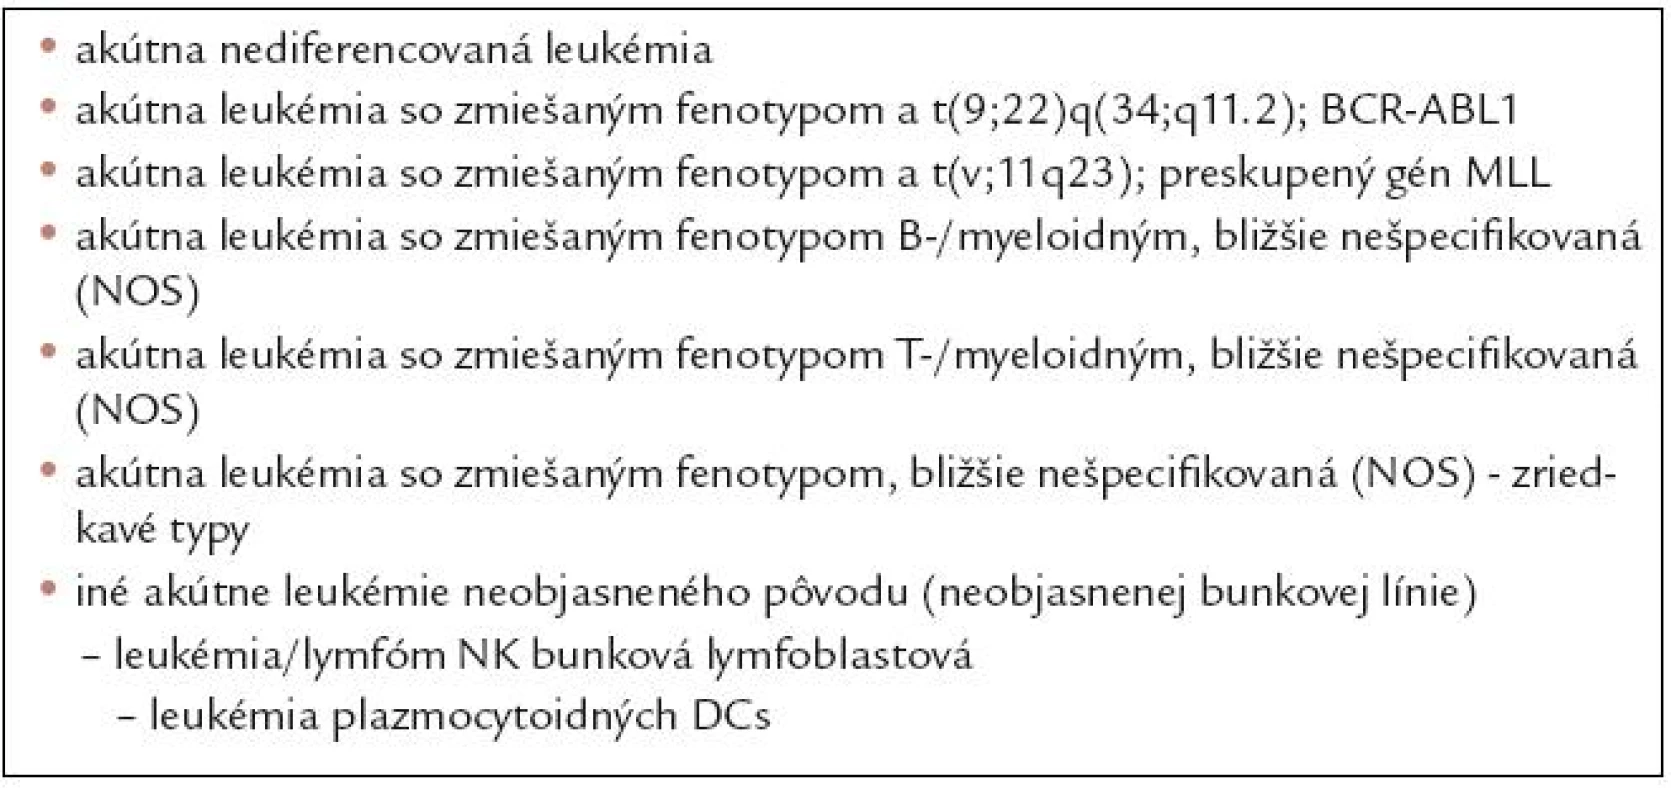 Klasifikácia akútnych leukémií neobjasneného bunkového pôvodu (podľa klasifikácie SZO z roku 2008).